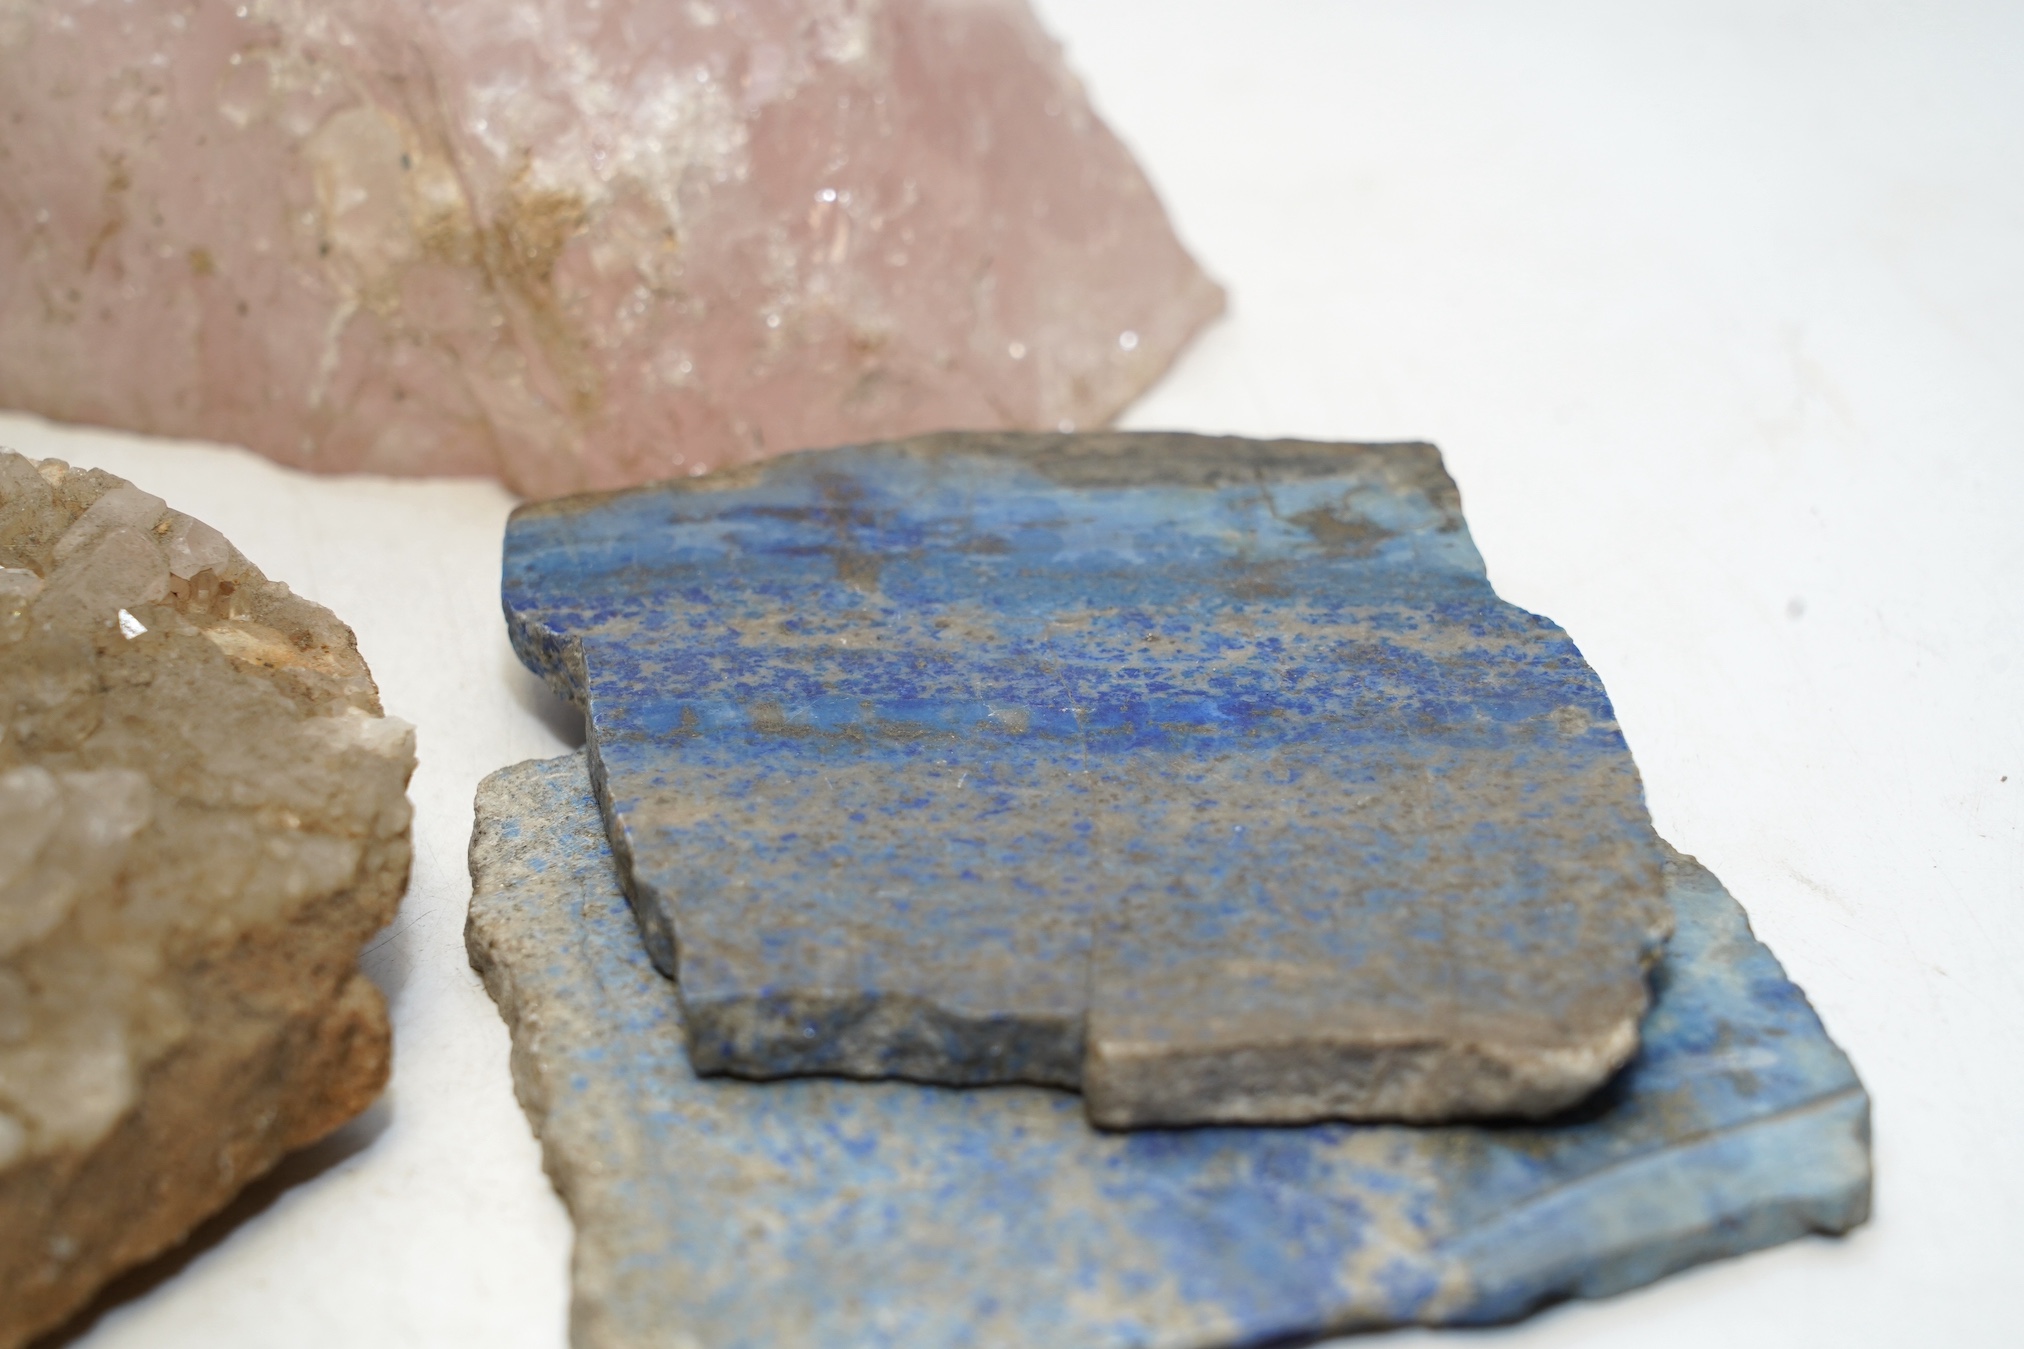 Assorted geodes including rose quartz and lapis lazuli, largest 15.5cm. Condition - fair